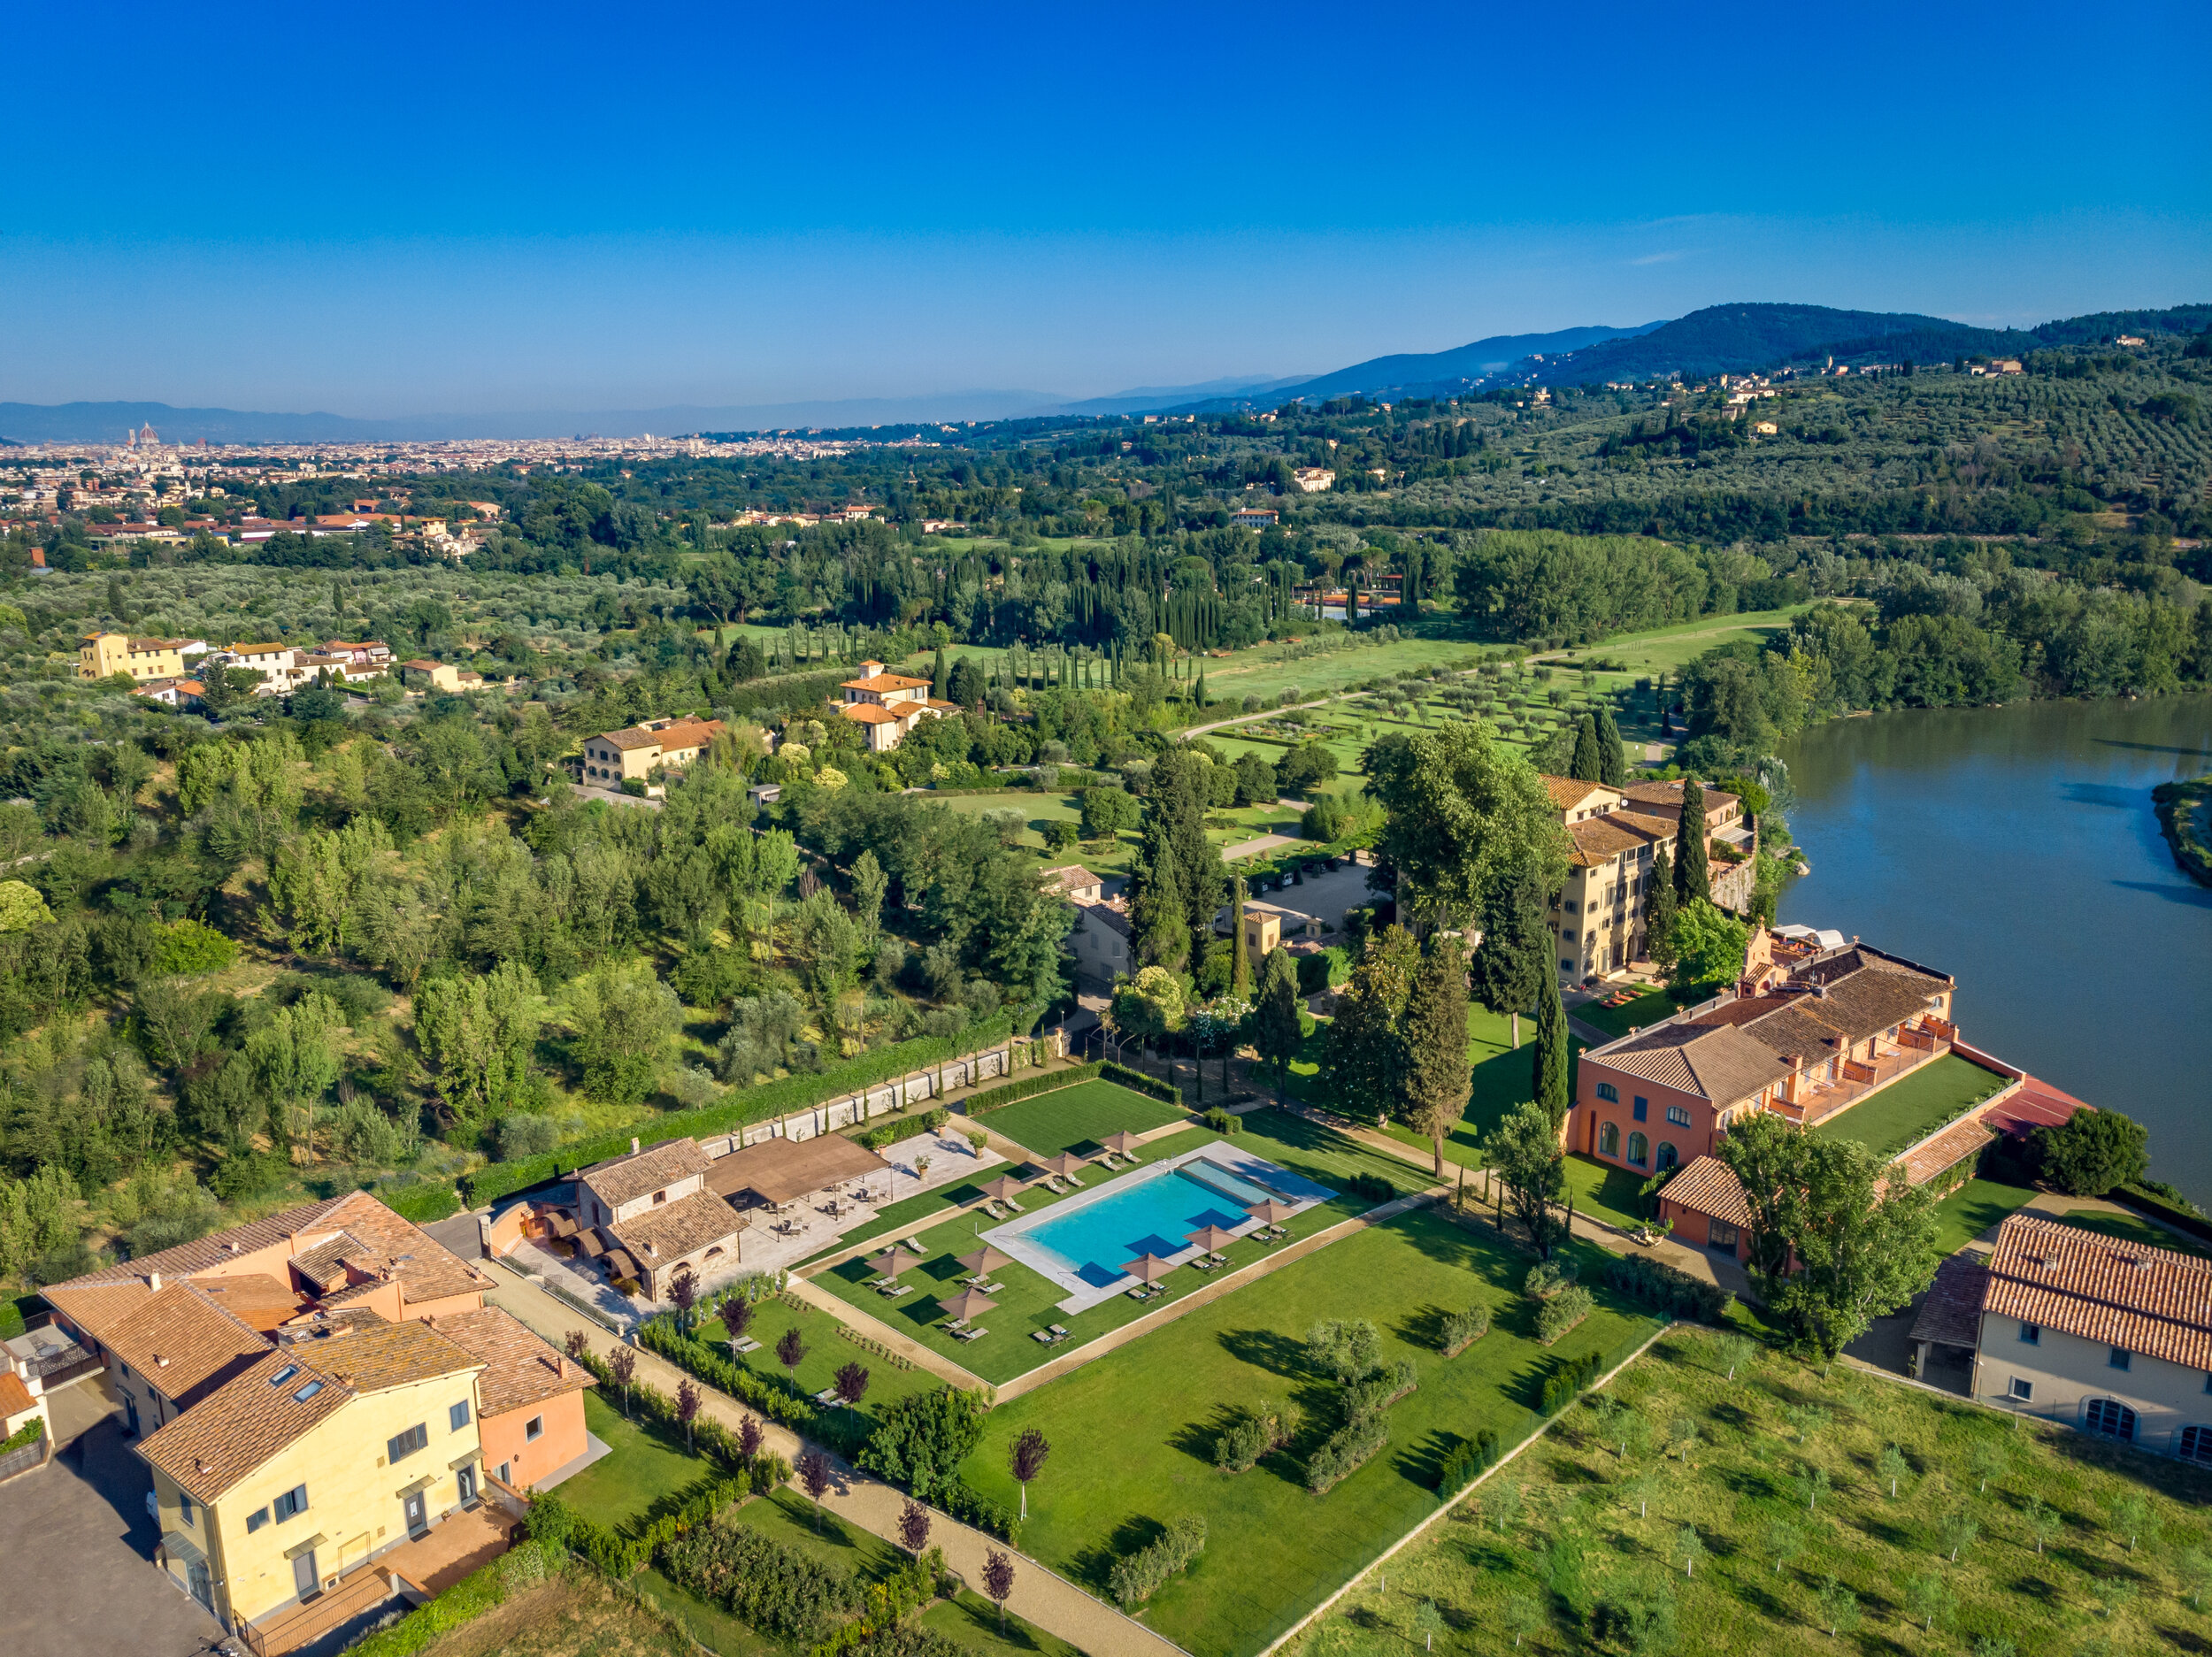 Villa La Massa, Arno River and Chianti hills - Lateral view (1).jpg